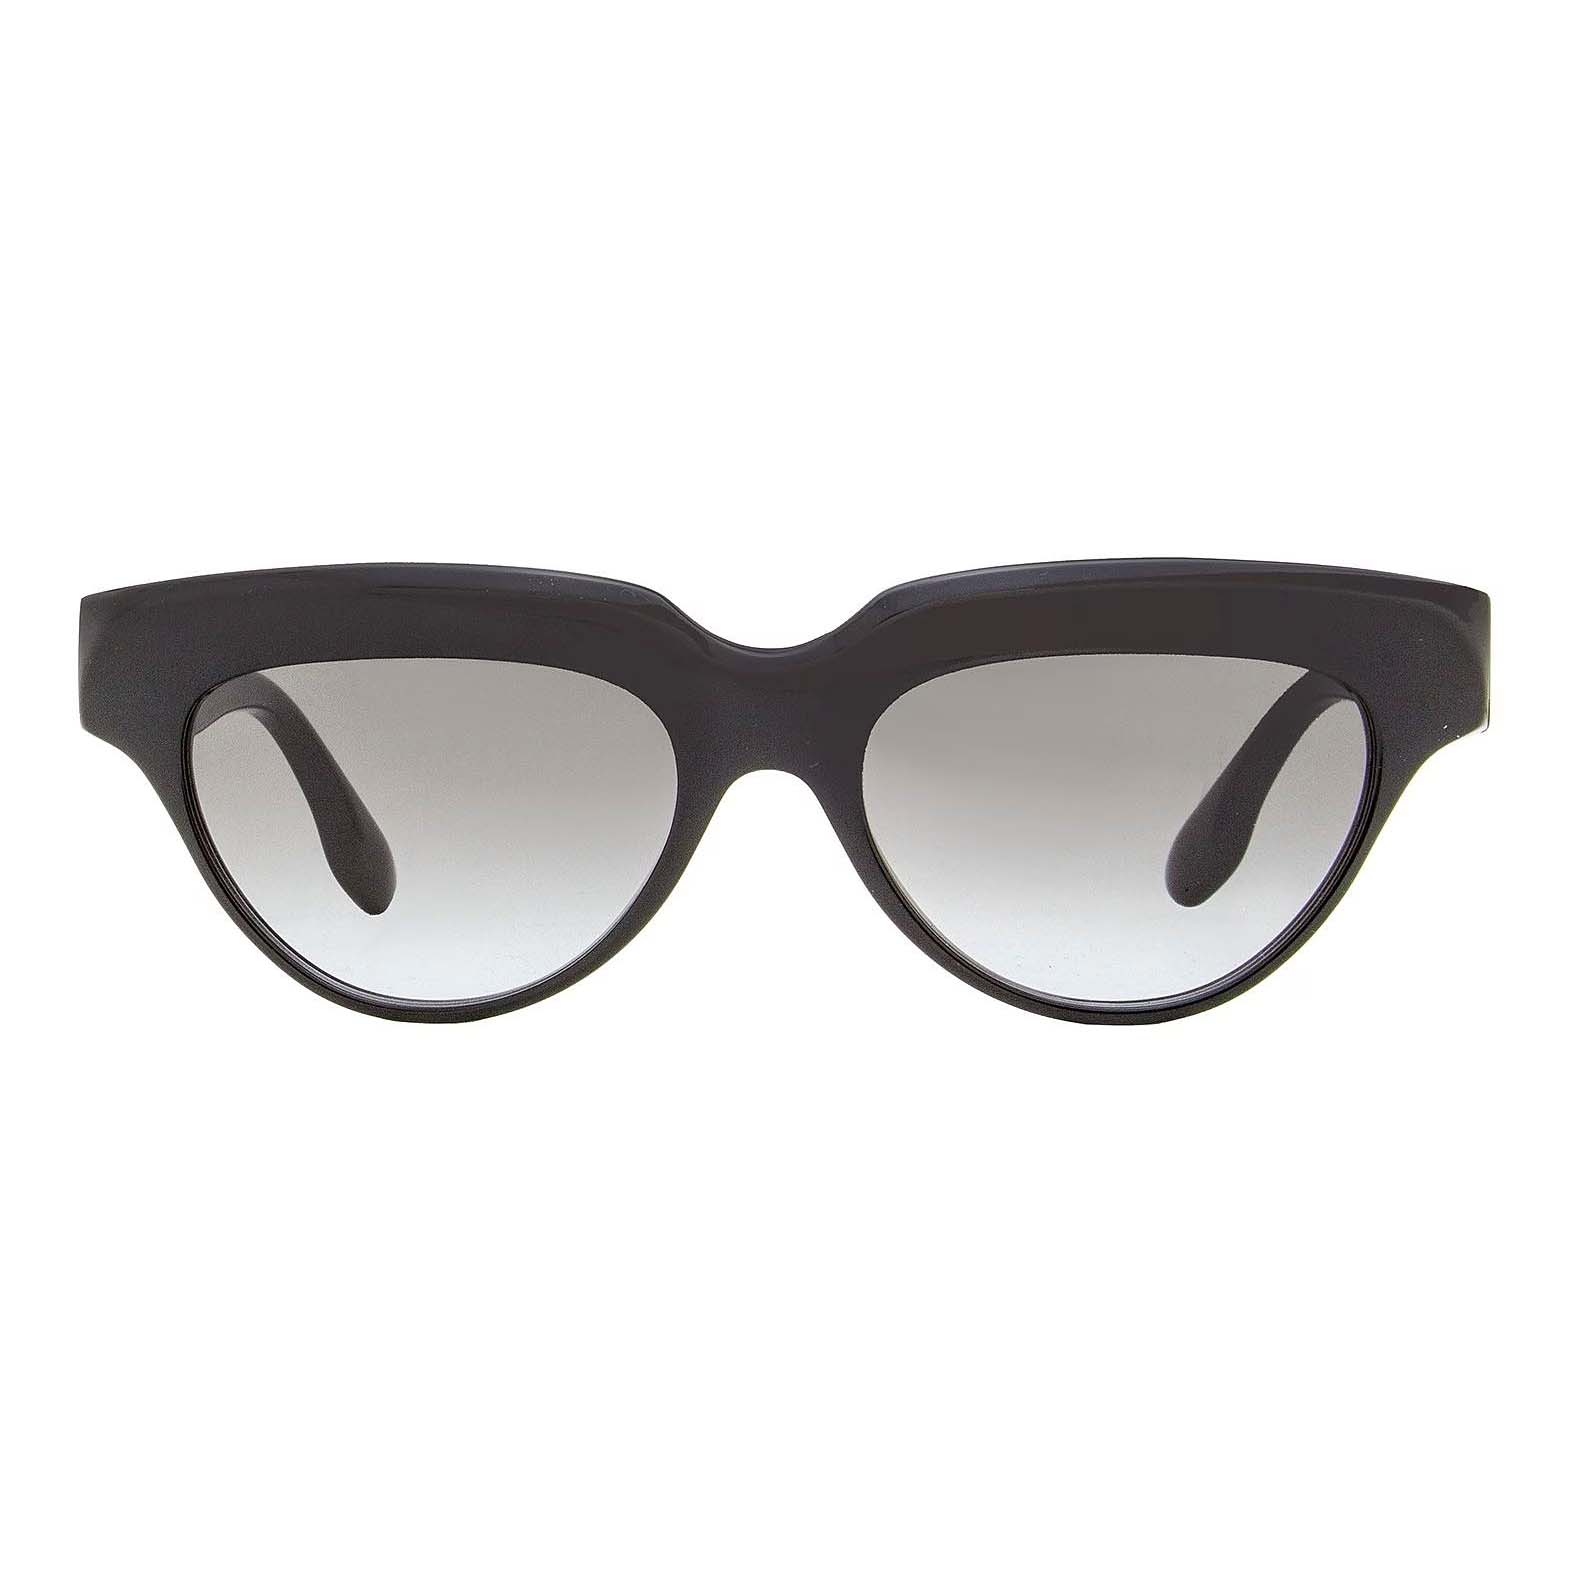 Солнцезащитные очки Victoria Beckham Cateye VB602S, черный солнцезащитные очки max mara кошачий глаз оправа пластик для женщин разноцветный